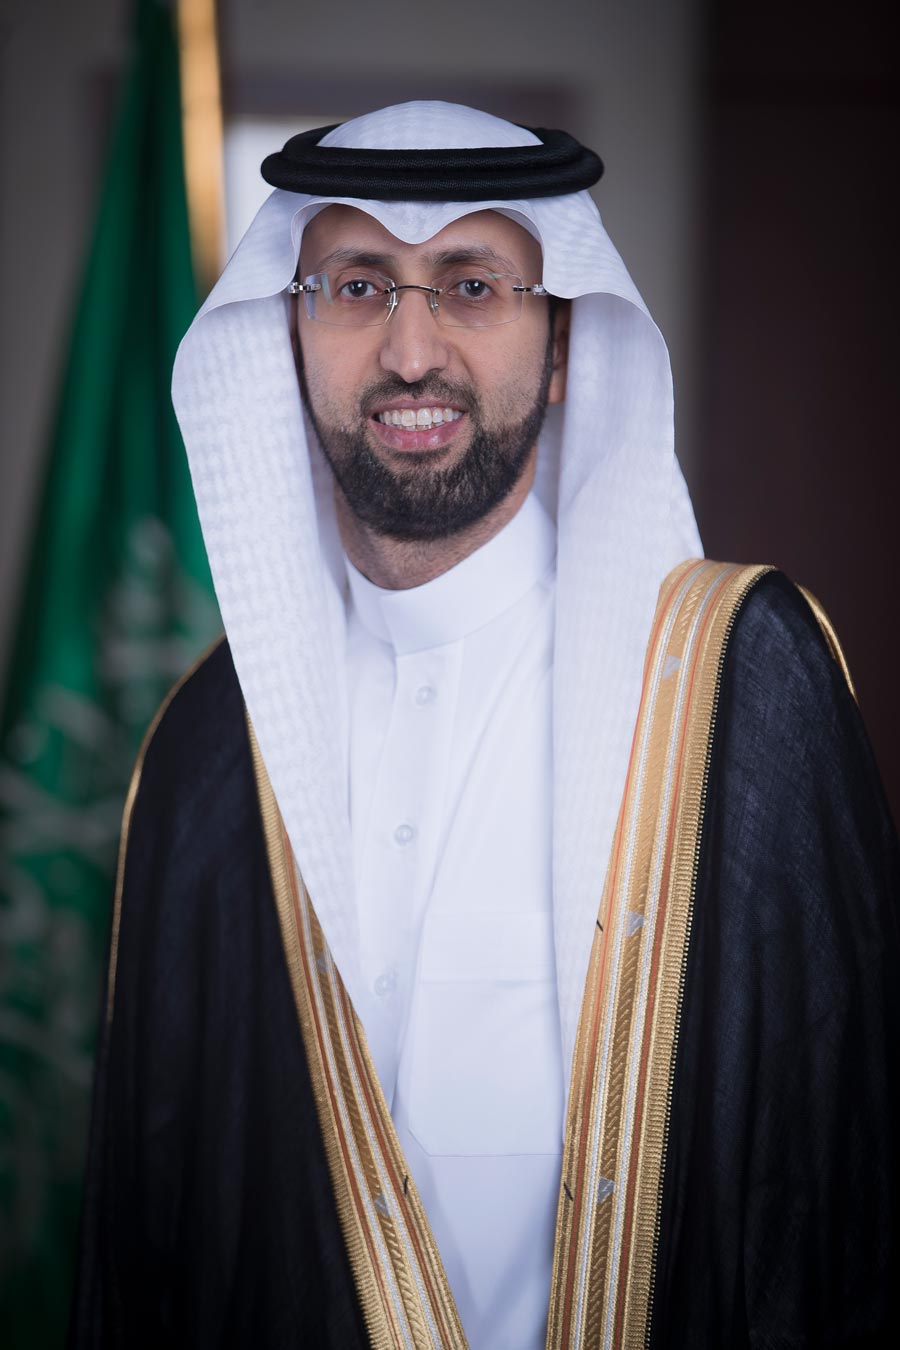 Saudi Food and Drug Authority (SFDA) CEO Hisham Bin Saad Al-Jadhey